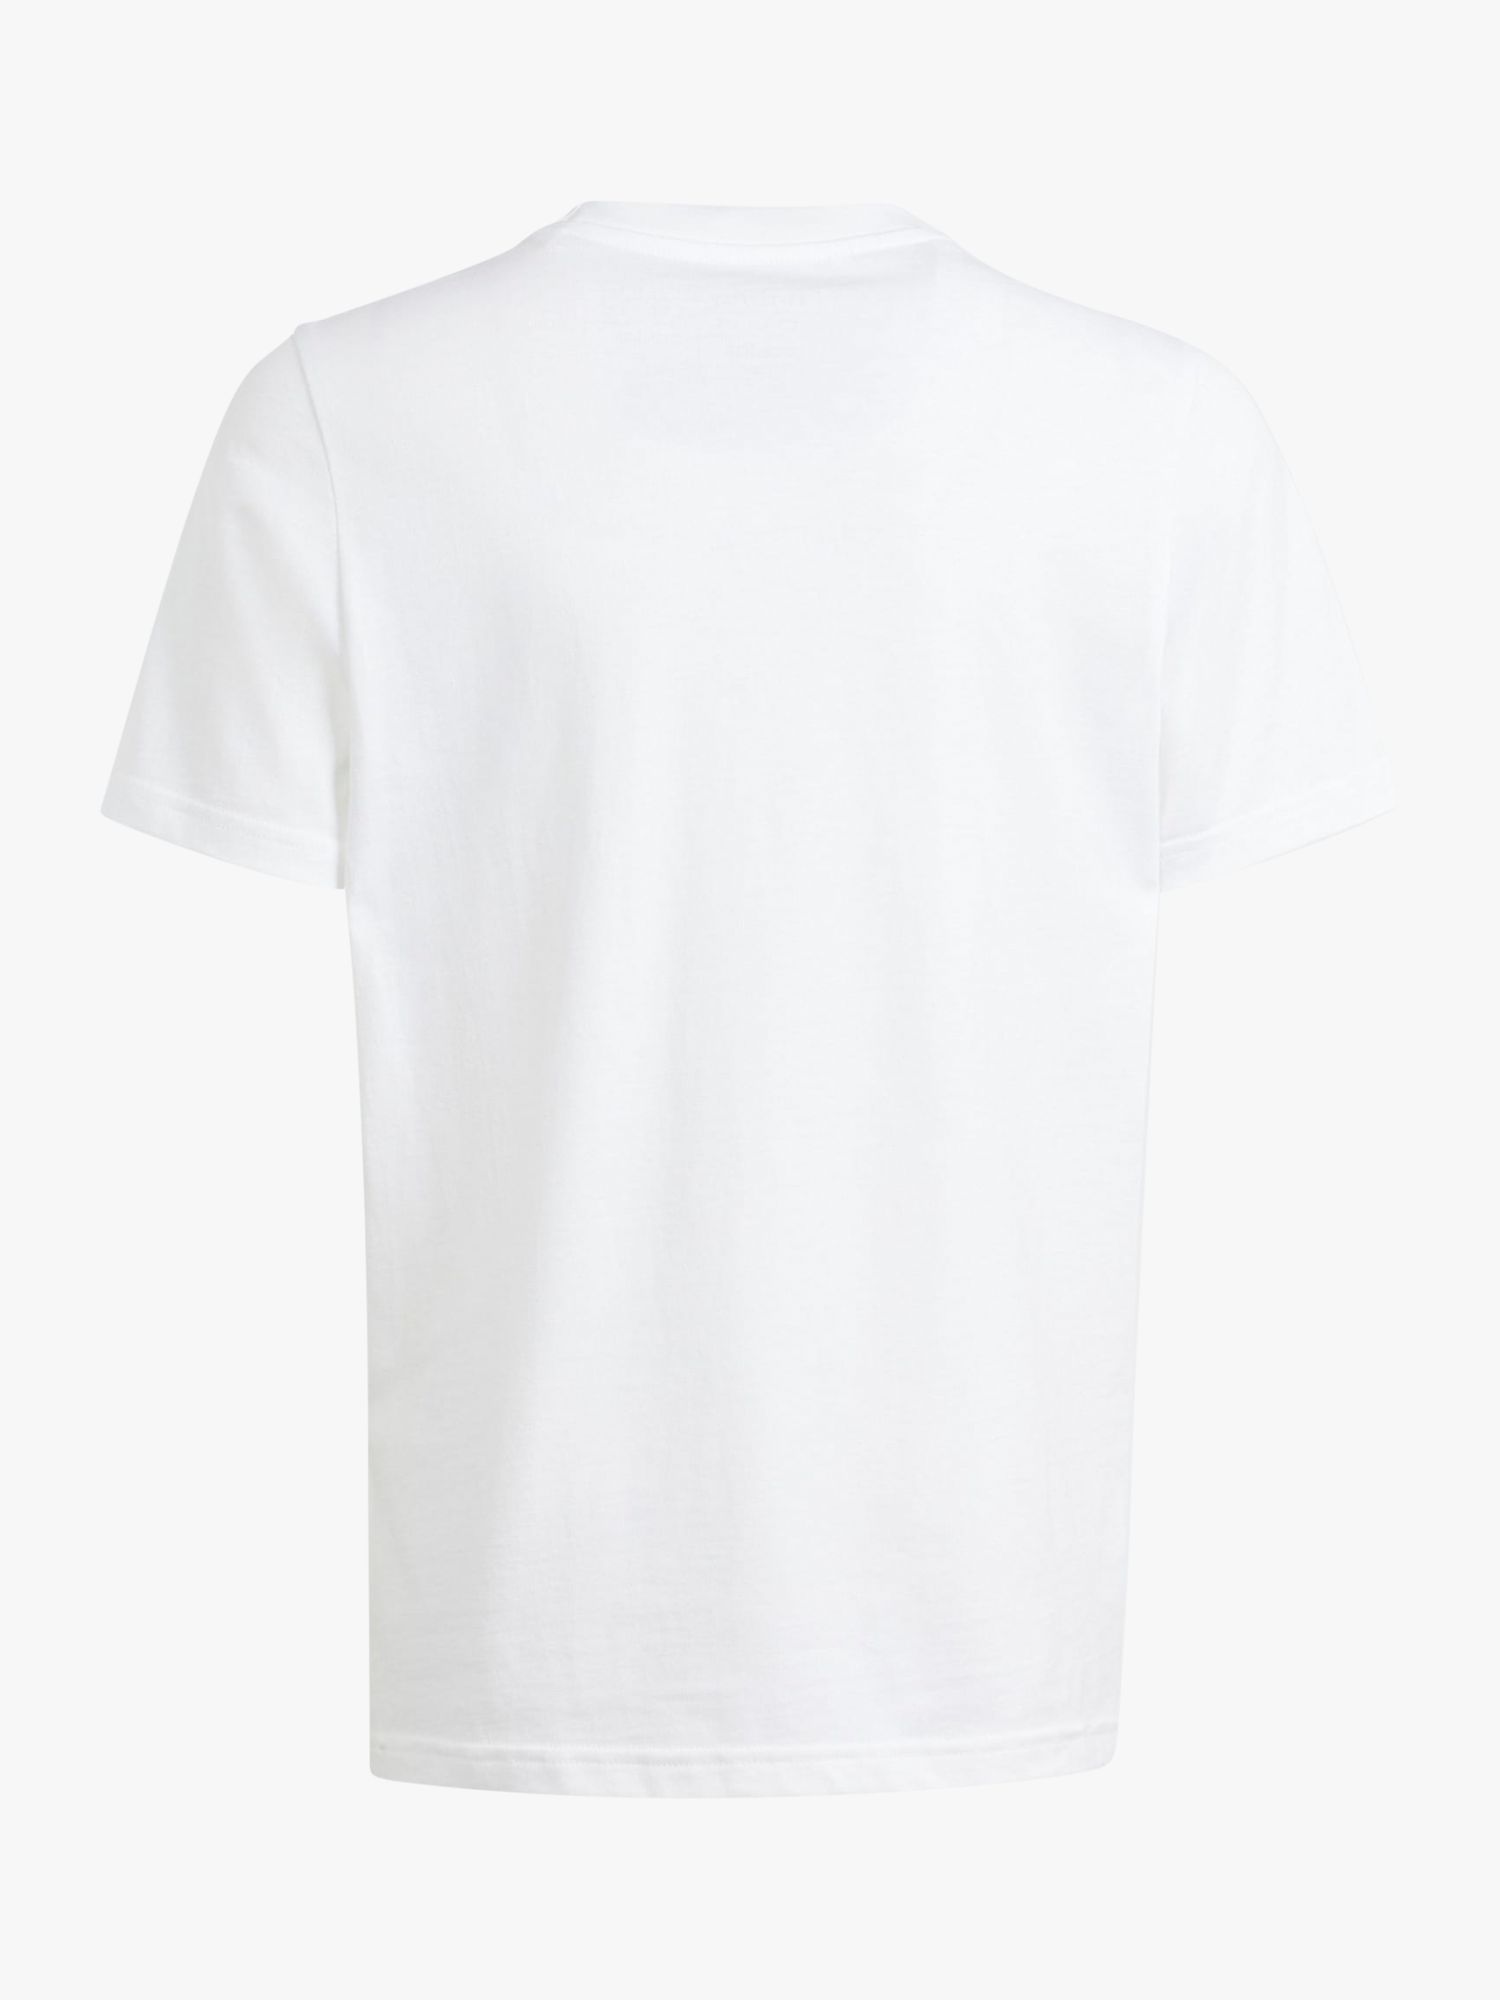 adidas Kids' Camo Logo T-Shirt, White, 13-14 years